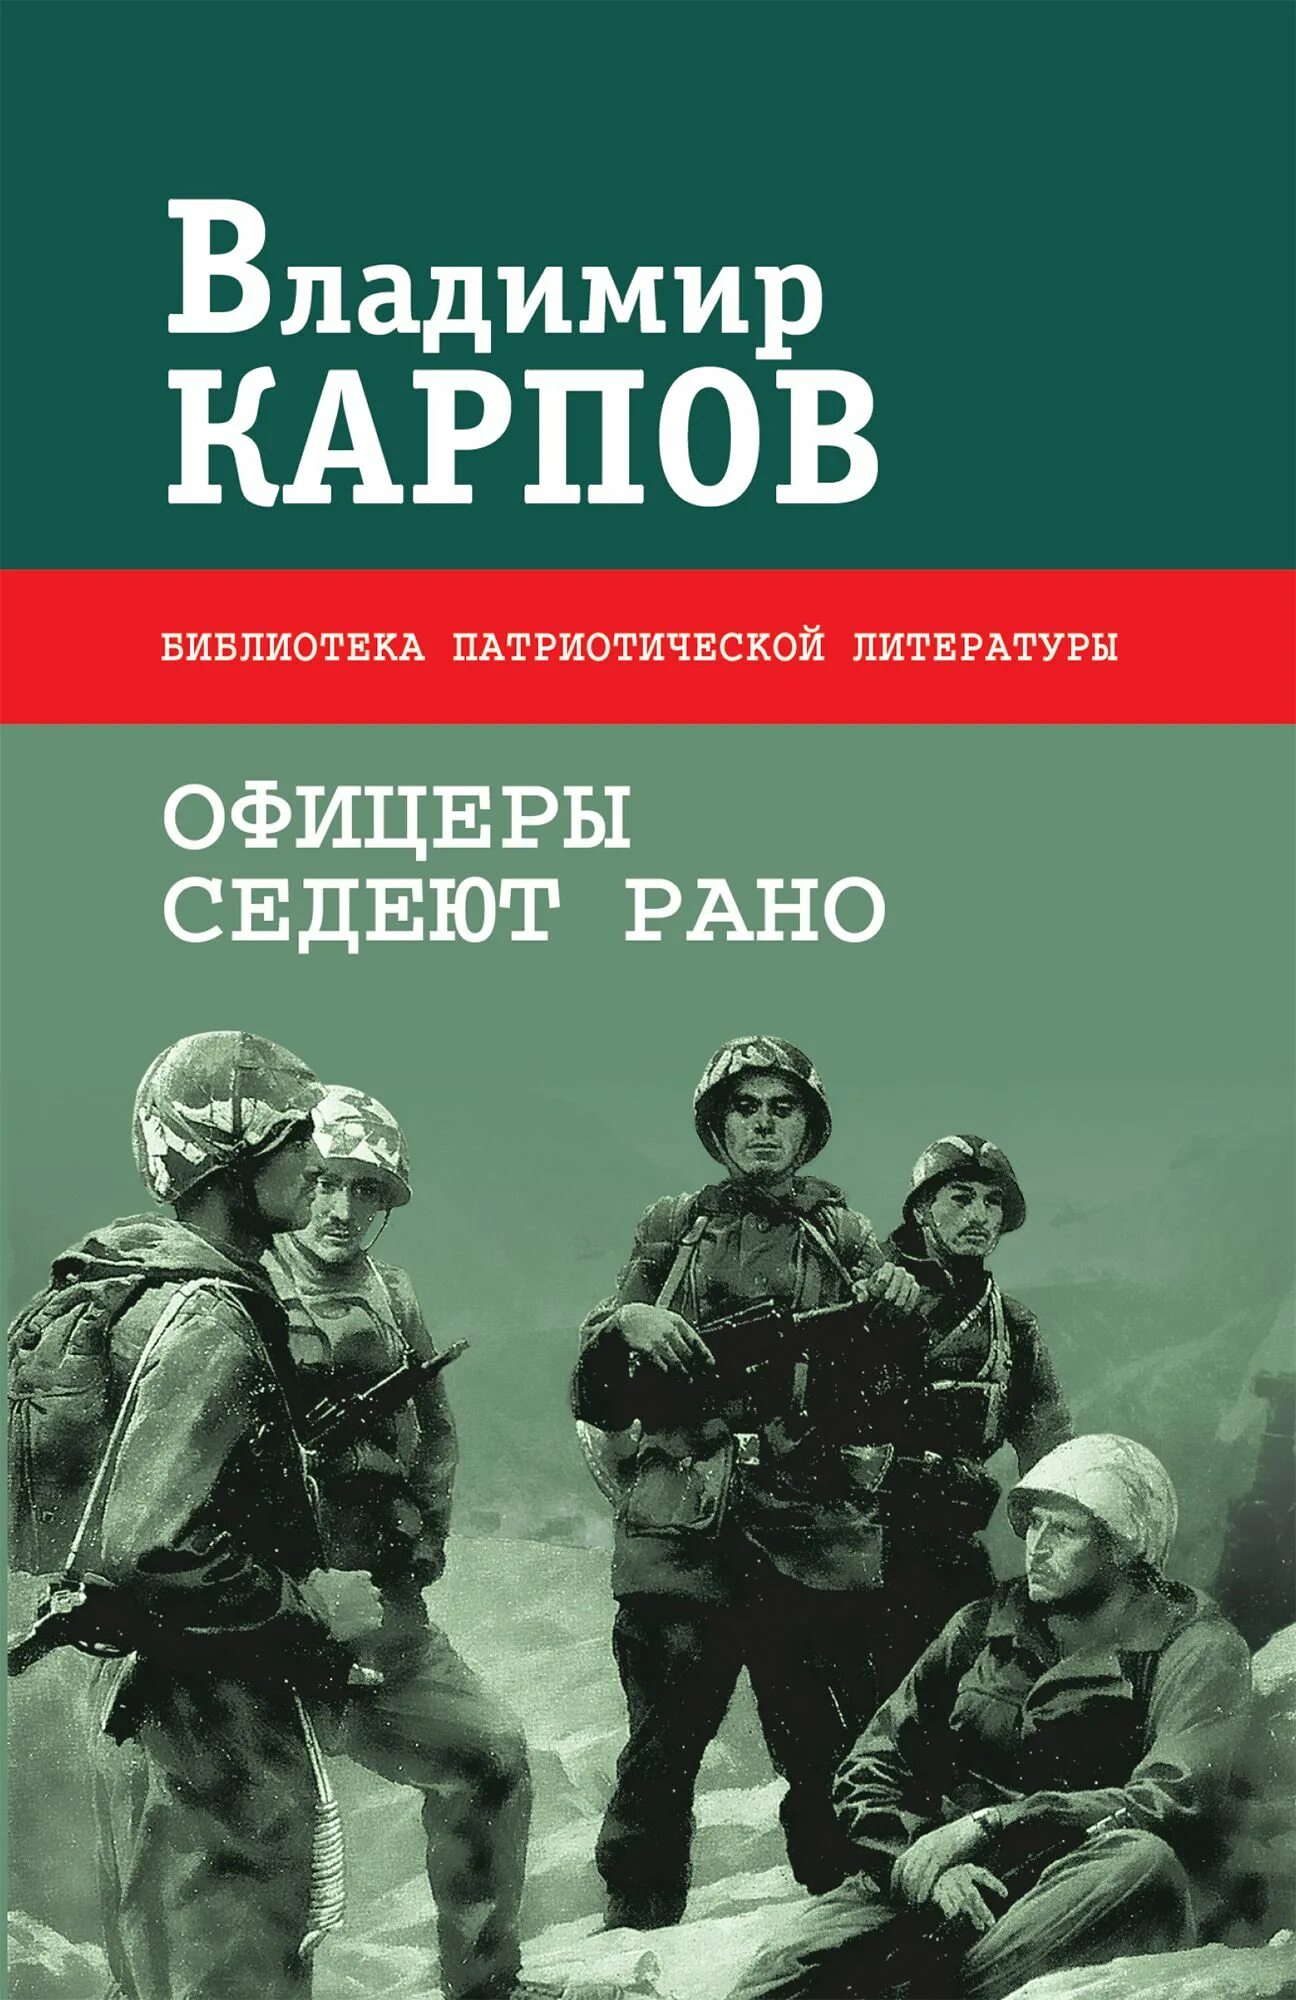 Книги о войне. Книги Владимира Карпова. Военные книги с авторами.